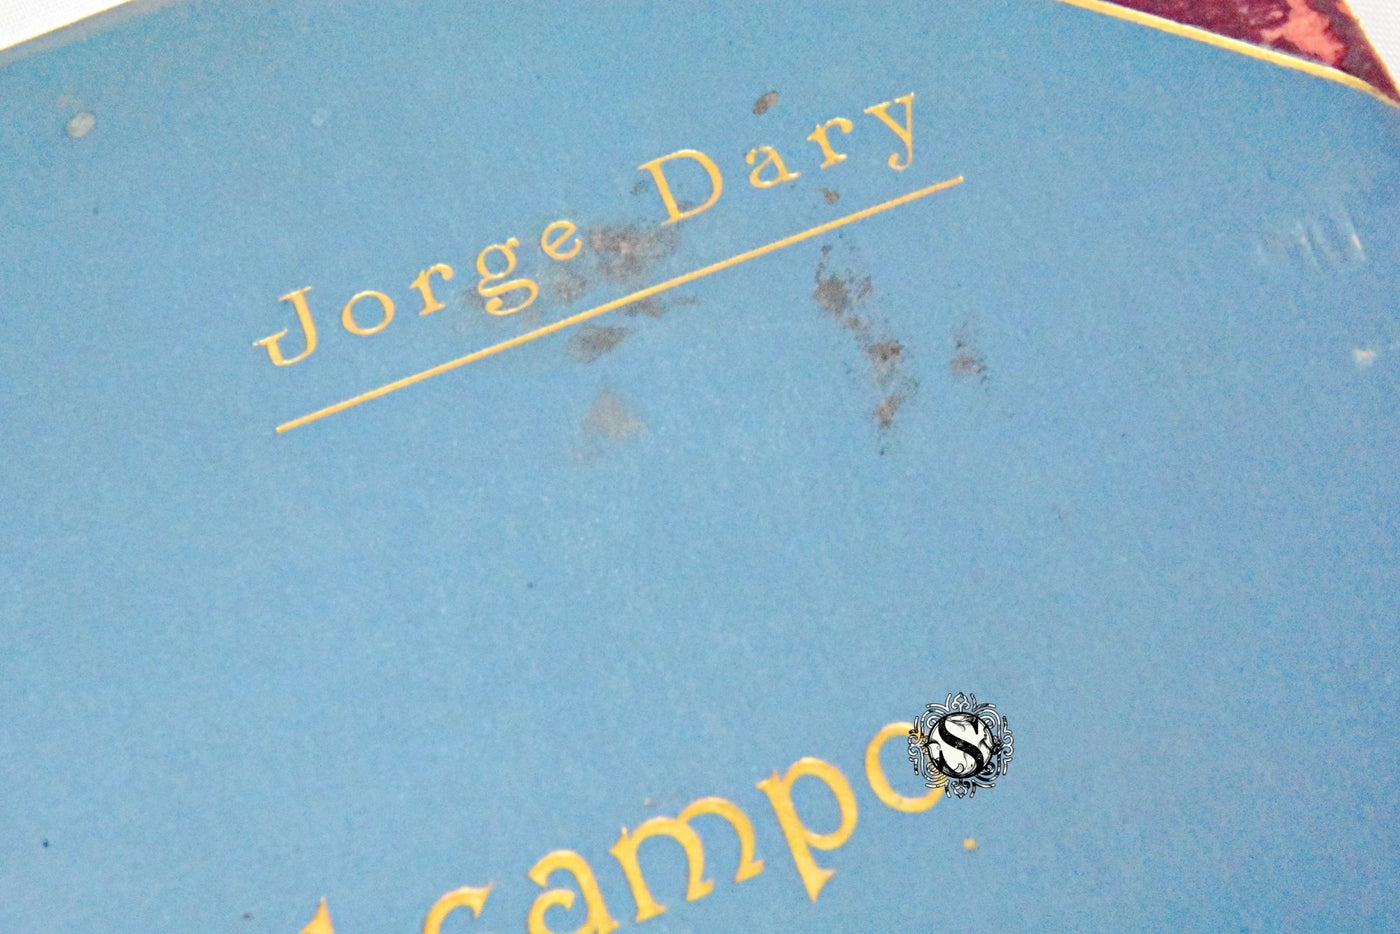 POR EL CAMPO DE LA ELECTRICIDAD. JORGE DARY.